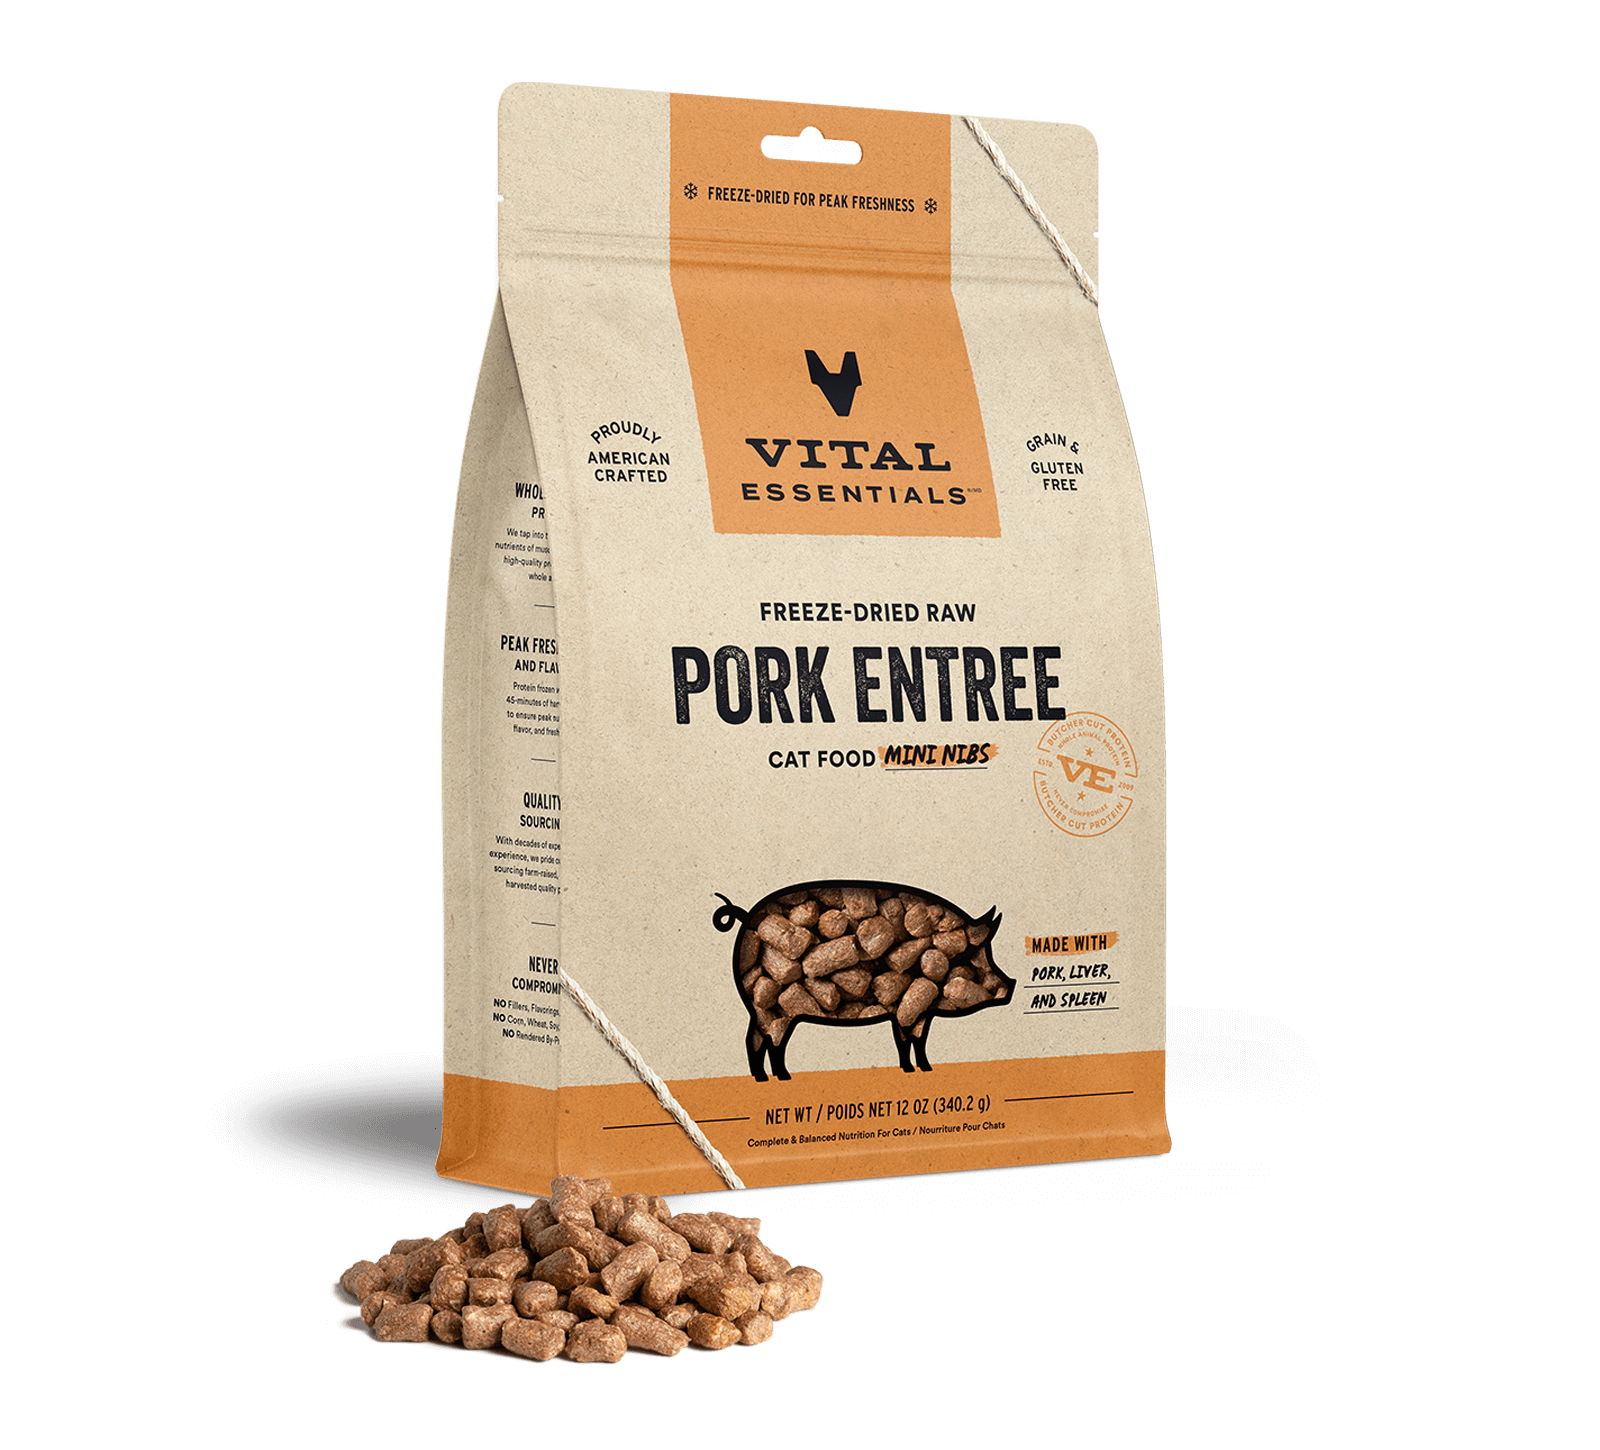 Vital Essentials Freeze-Dried Raw Pork Entree Cat Food Mini Nibs, 12 oz - Items on Sale Now